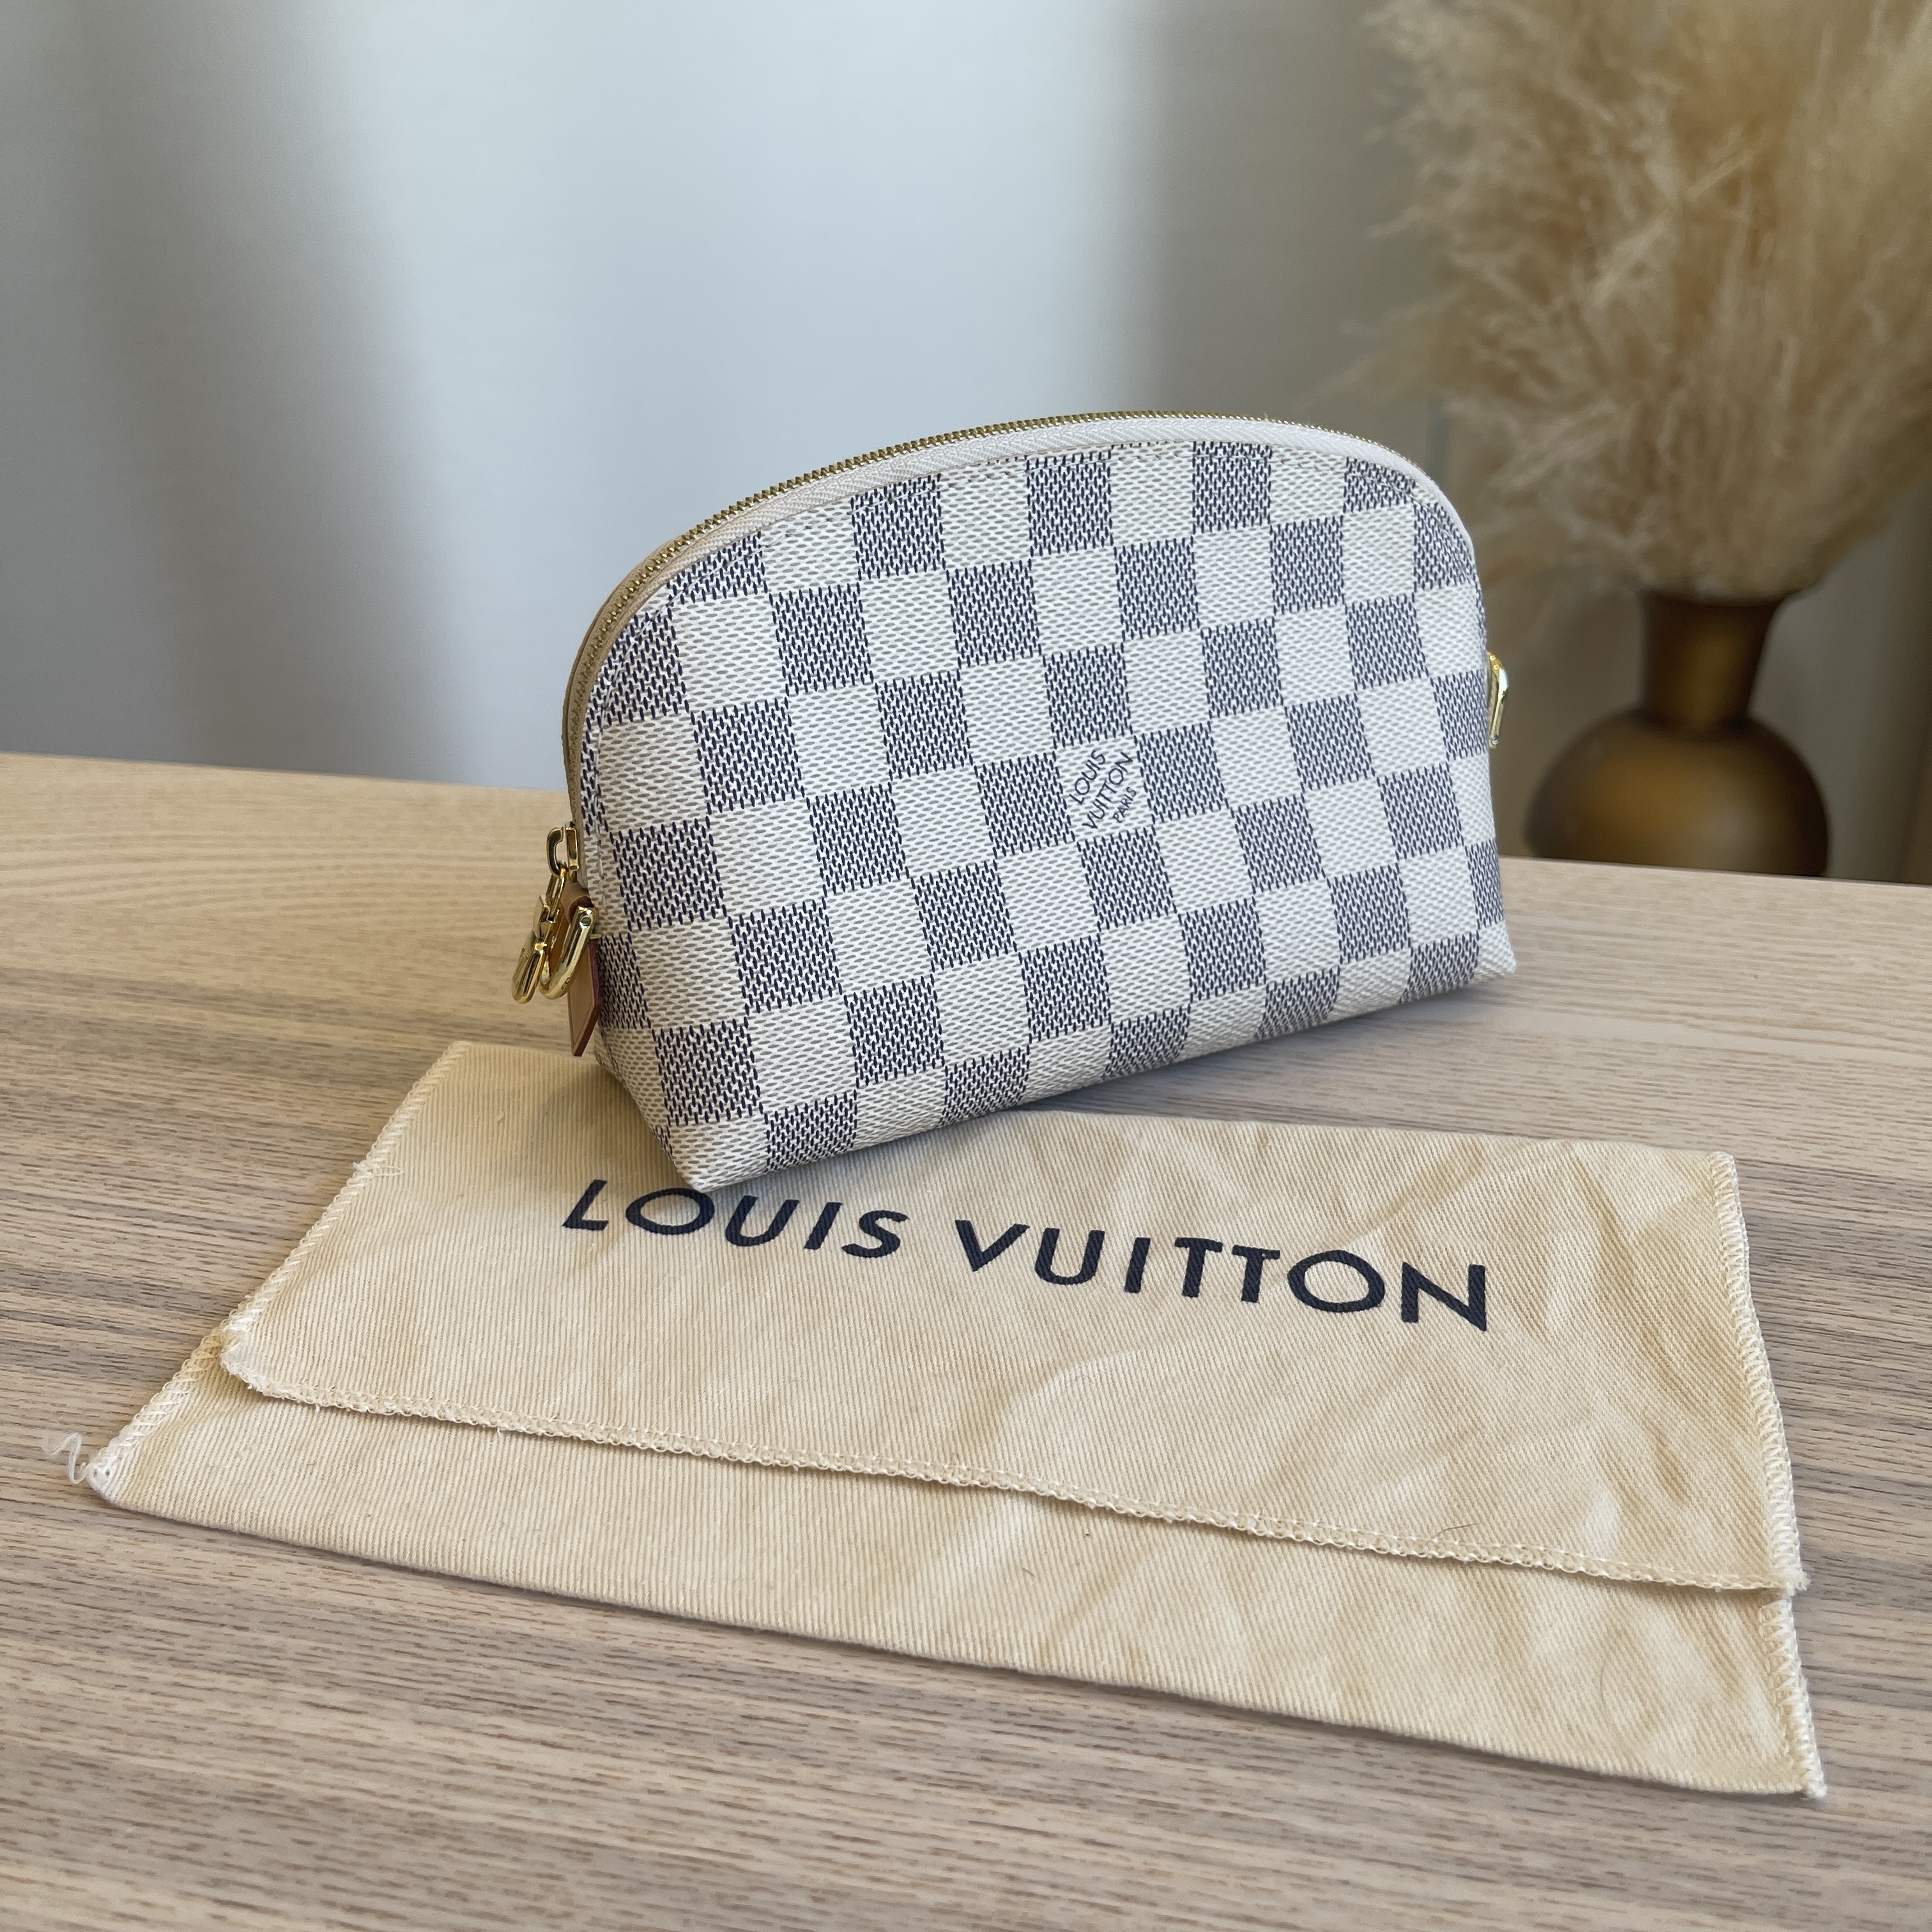 Louis Vuitton Makeup Pouch Damier Azur Handbag, One Size